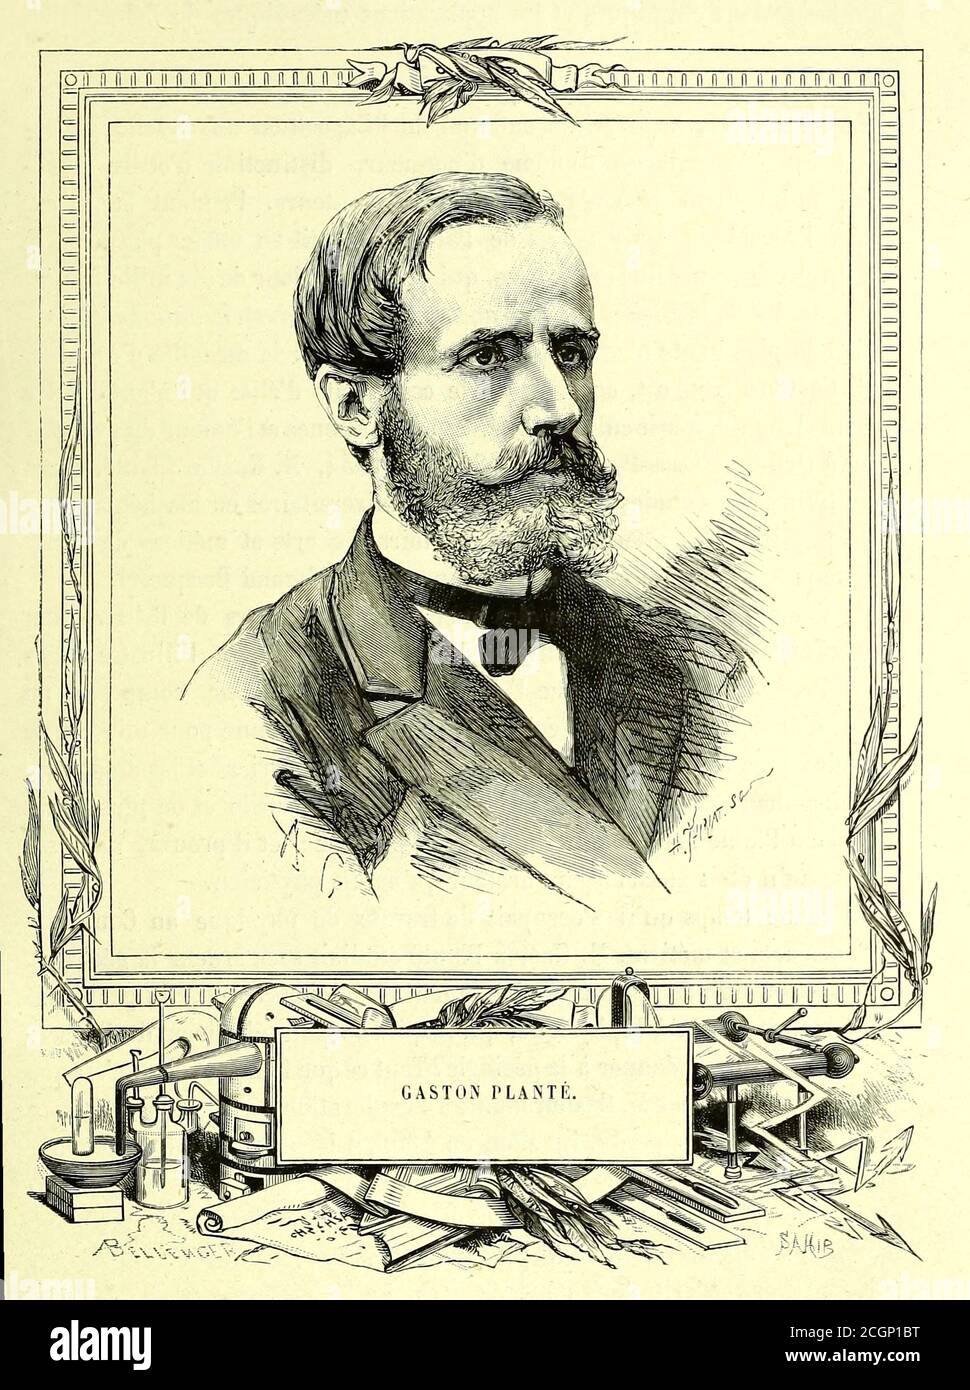 Gaston Planté (22 avril 1834 – 21 mai 1889) est un physicien français qui a  inventé la batterie plomb-acide en 1859. Ce type de batterie a été  développé comme la première batterie